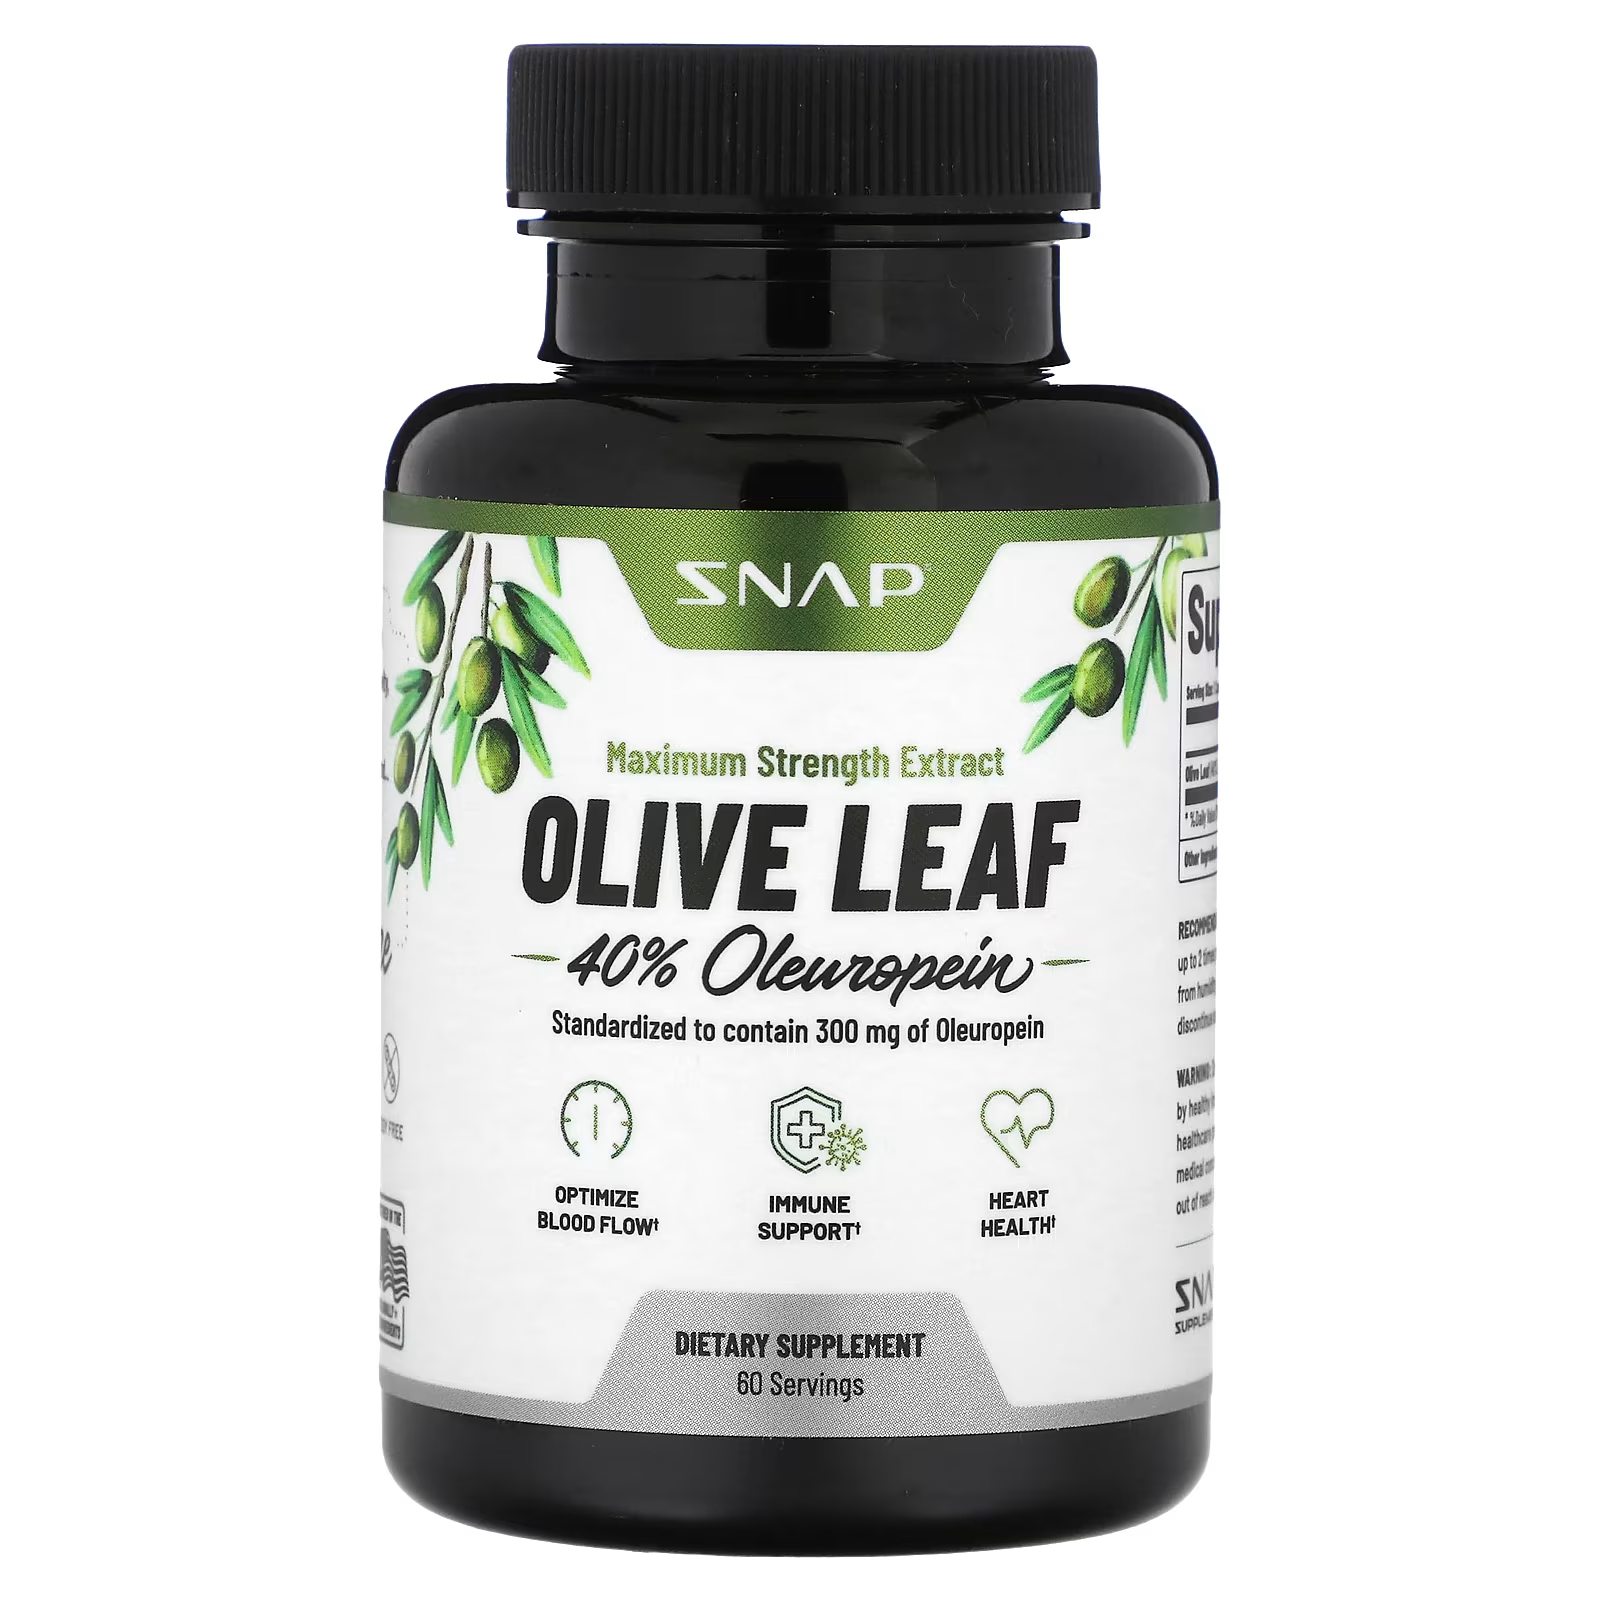 Пищевая добавка Snap Supplements Olive Leaf максимальная сила, 60 капсул пищевая добавка snap supplements здоровье простаты 90 капсул